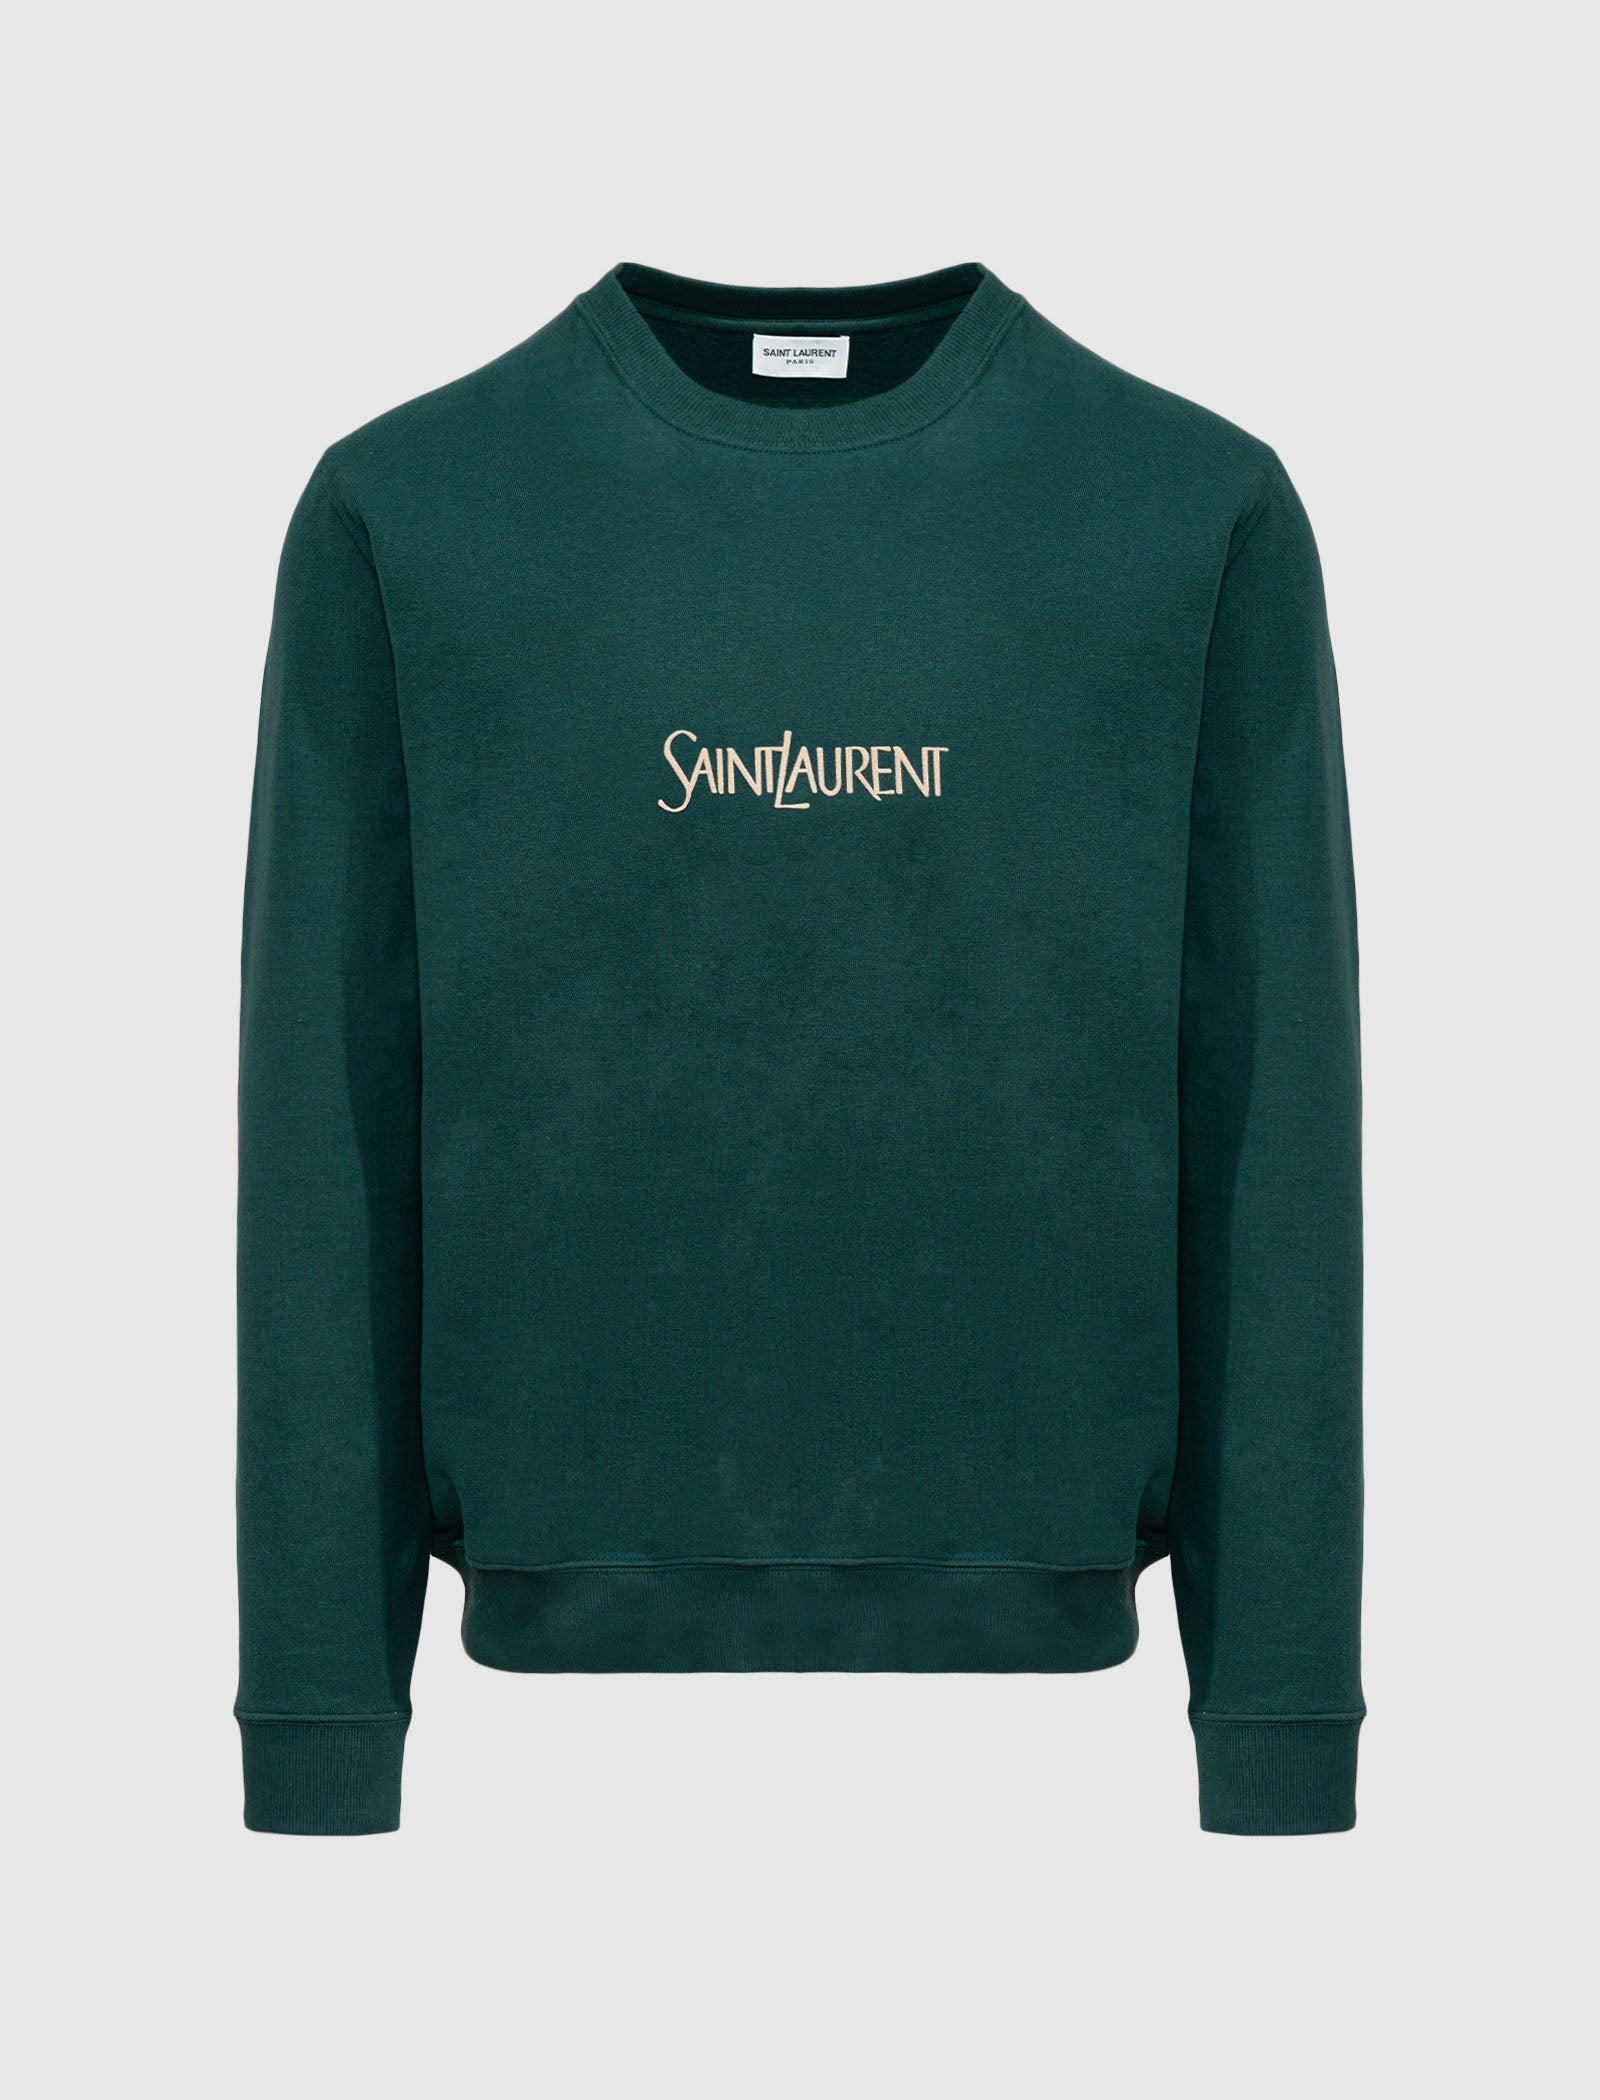 Saint Laurent Logo Sweatshirt in Green for Men | Lyst